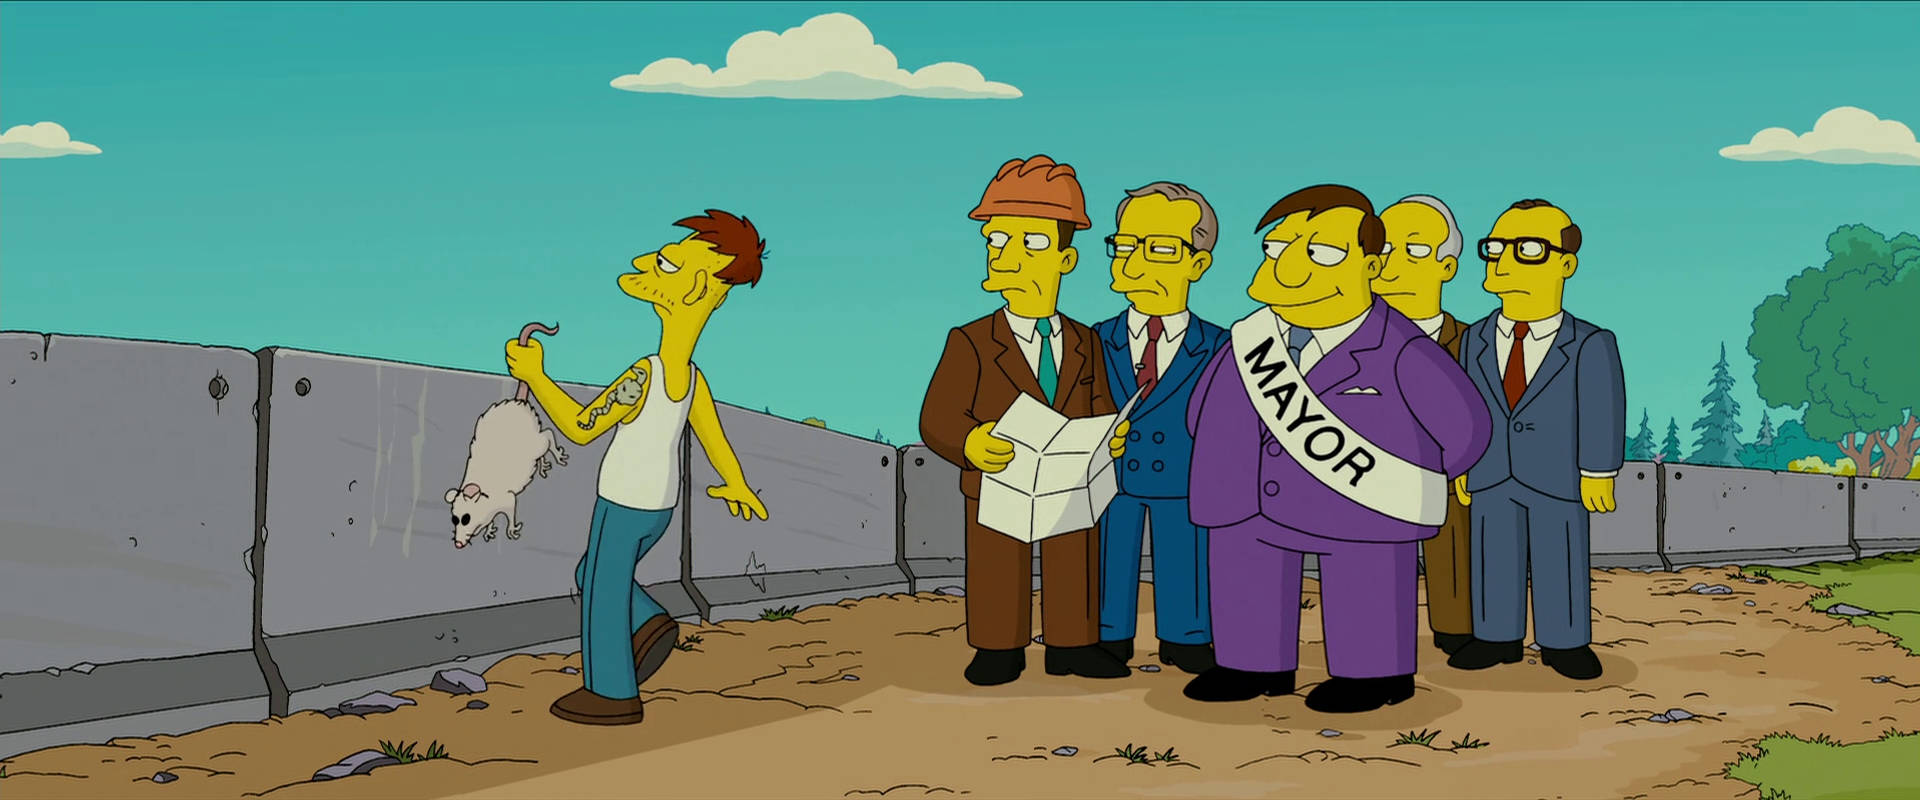 Bürgermeisteraus Dem Film Die Simpsons Wallpaper